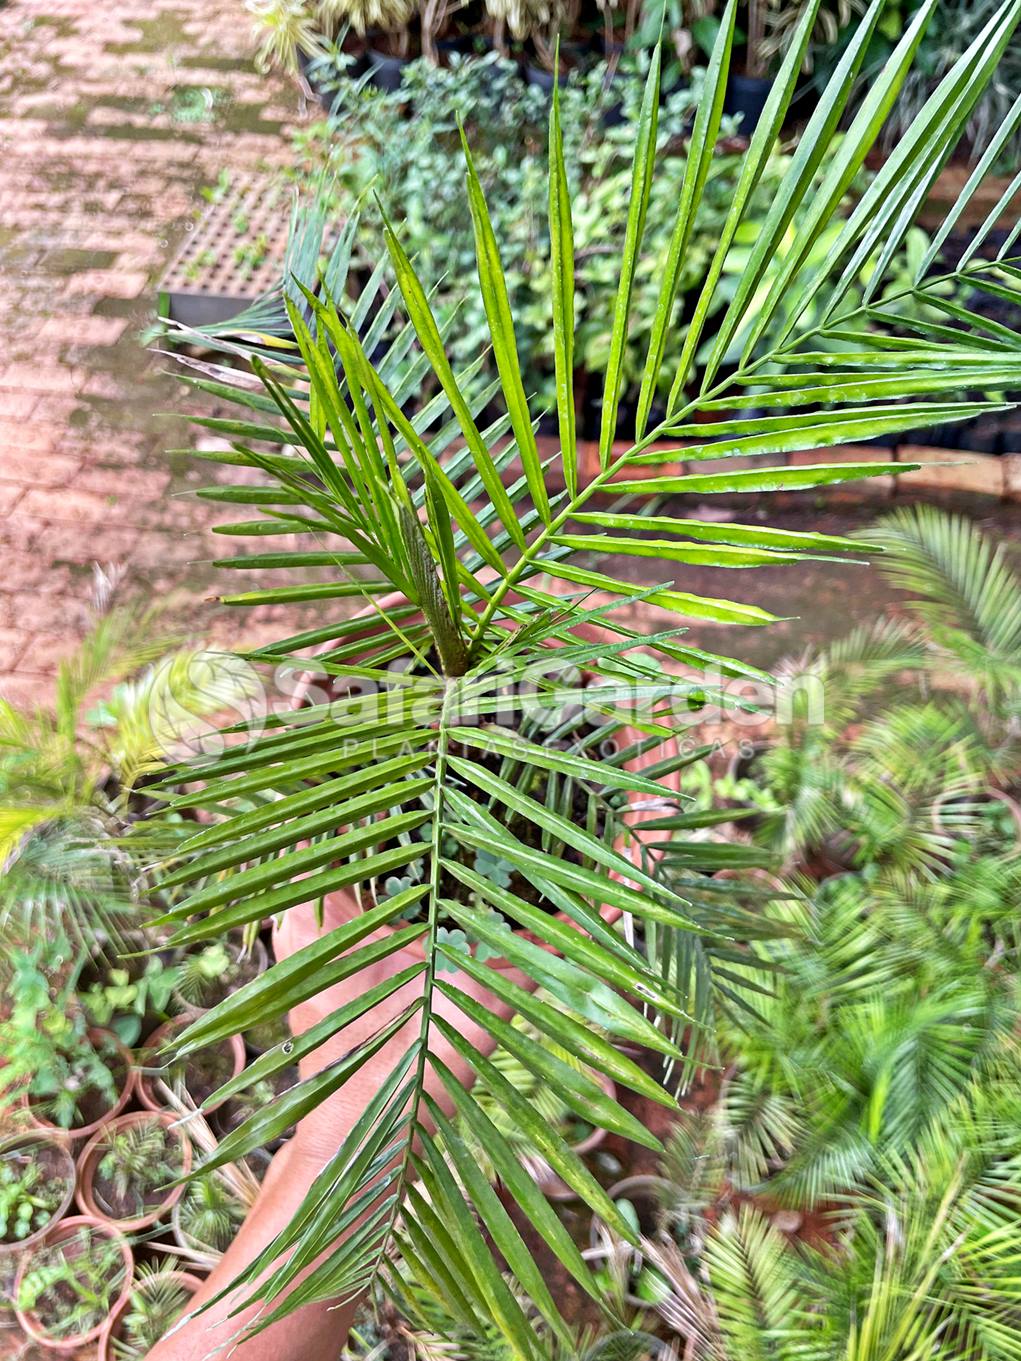 Muda Palmeira Wedeliana - Lytocaryum Weddellianum